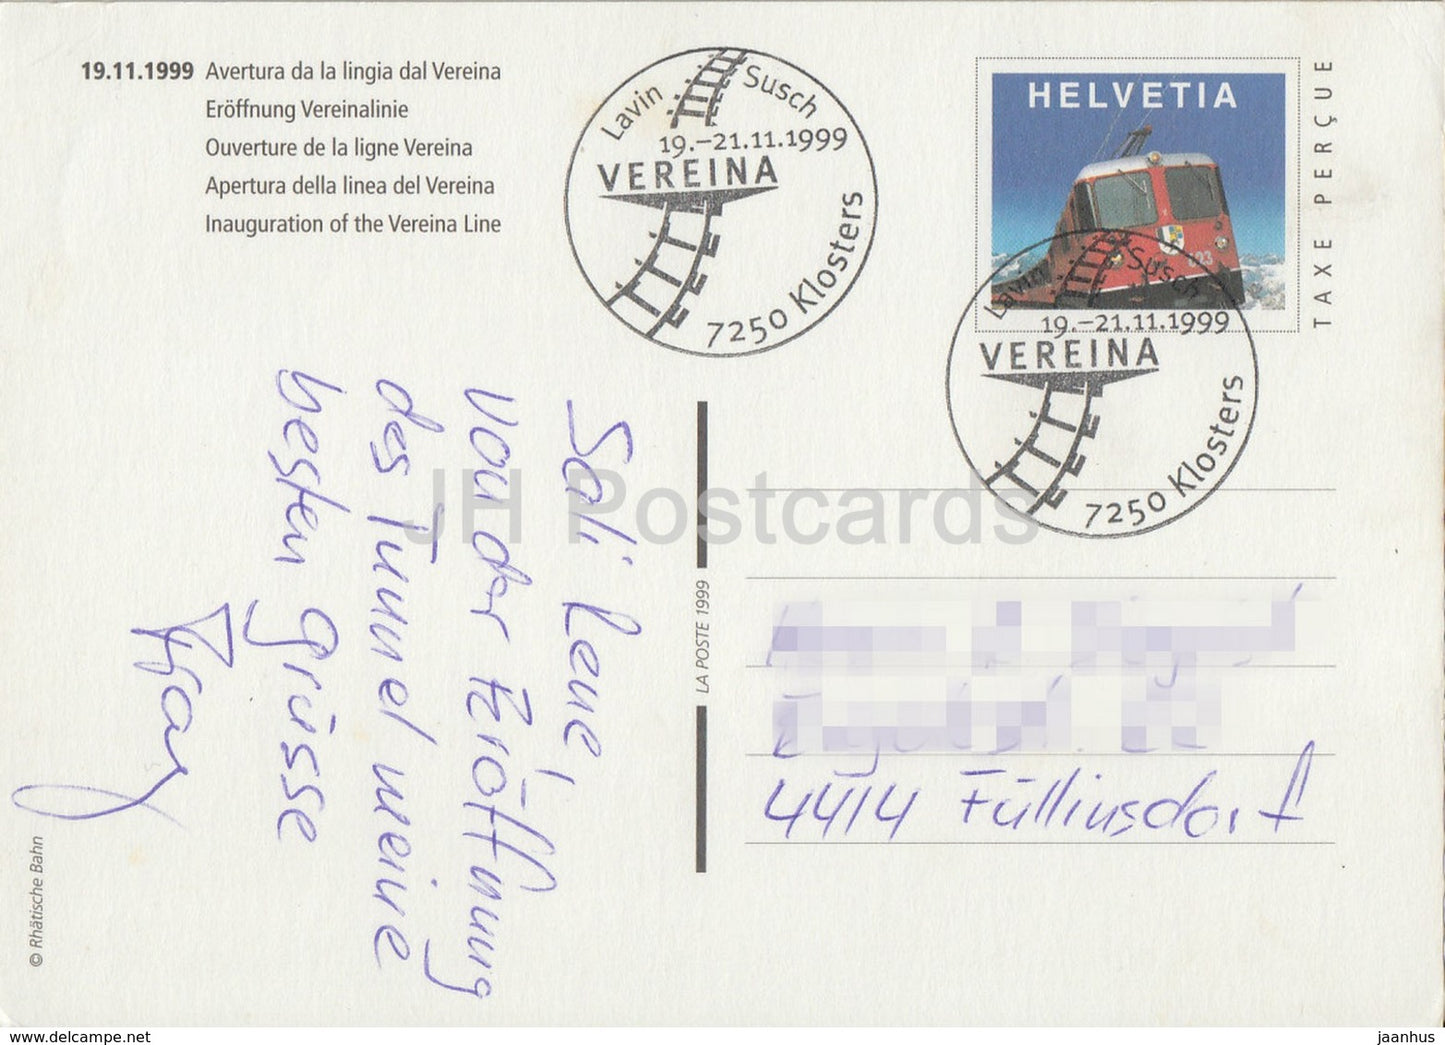 Eroffnung Vereinalinie - Inauguration of the Vereina Line - train - railway - 1999 - Switzerland - used